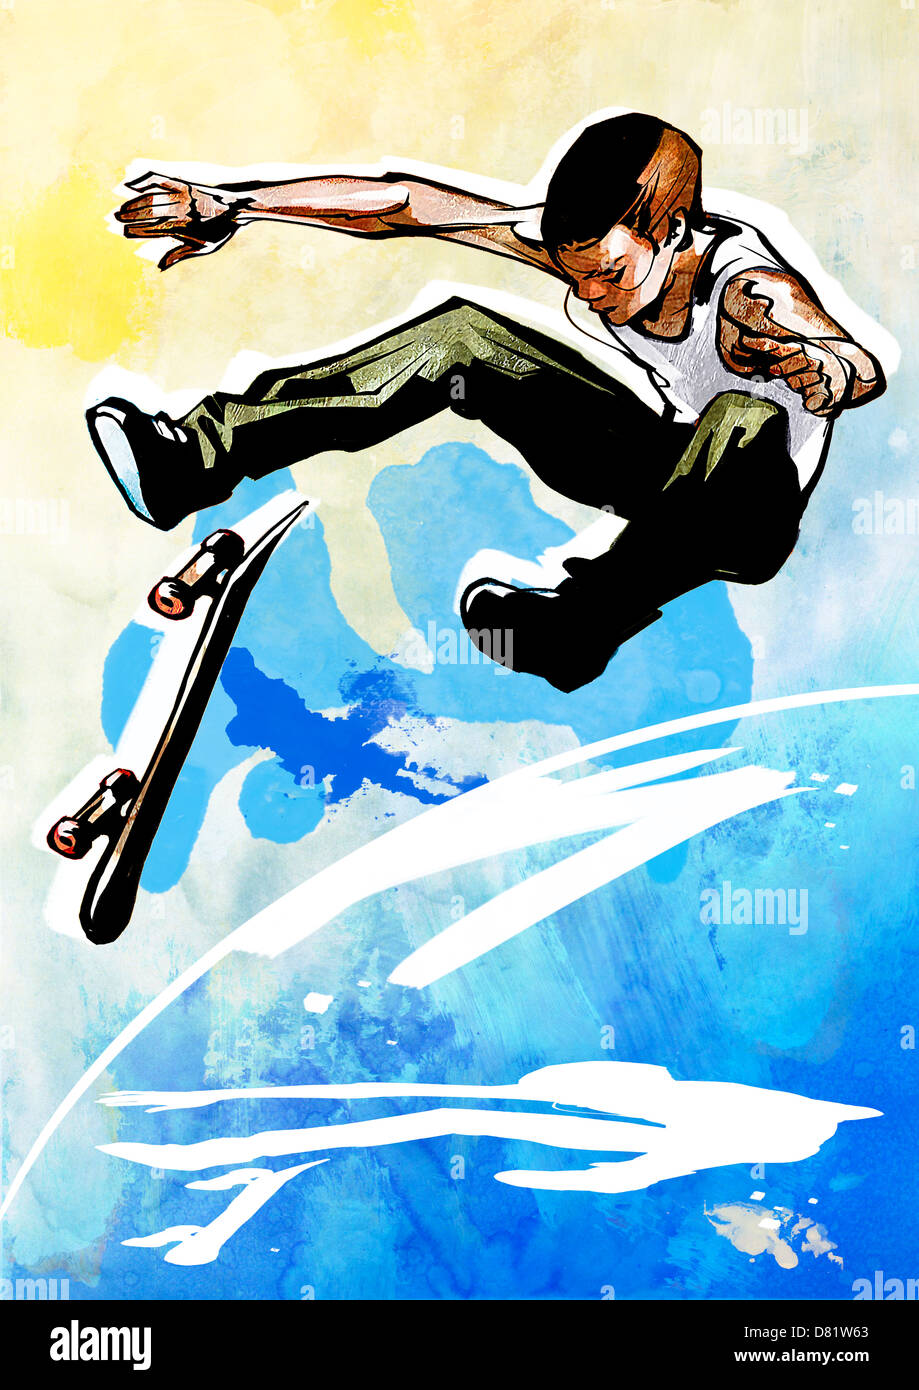 Eine Grafik-Design-Illustration eines Skateboarders. Stockfoto